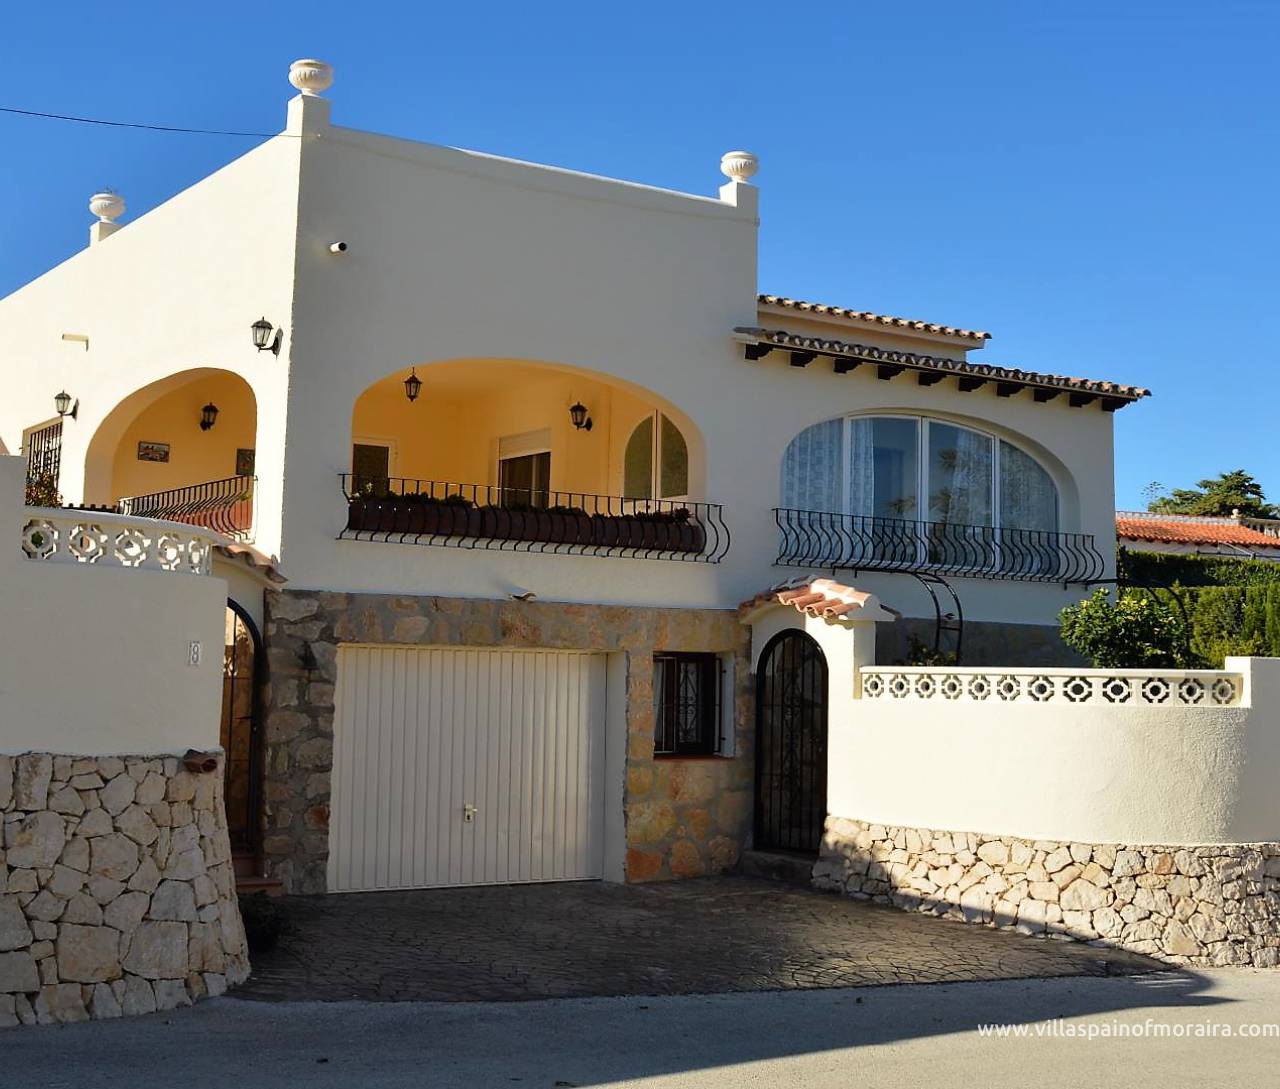 Moraira sea view villa for sale